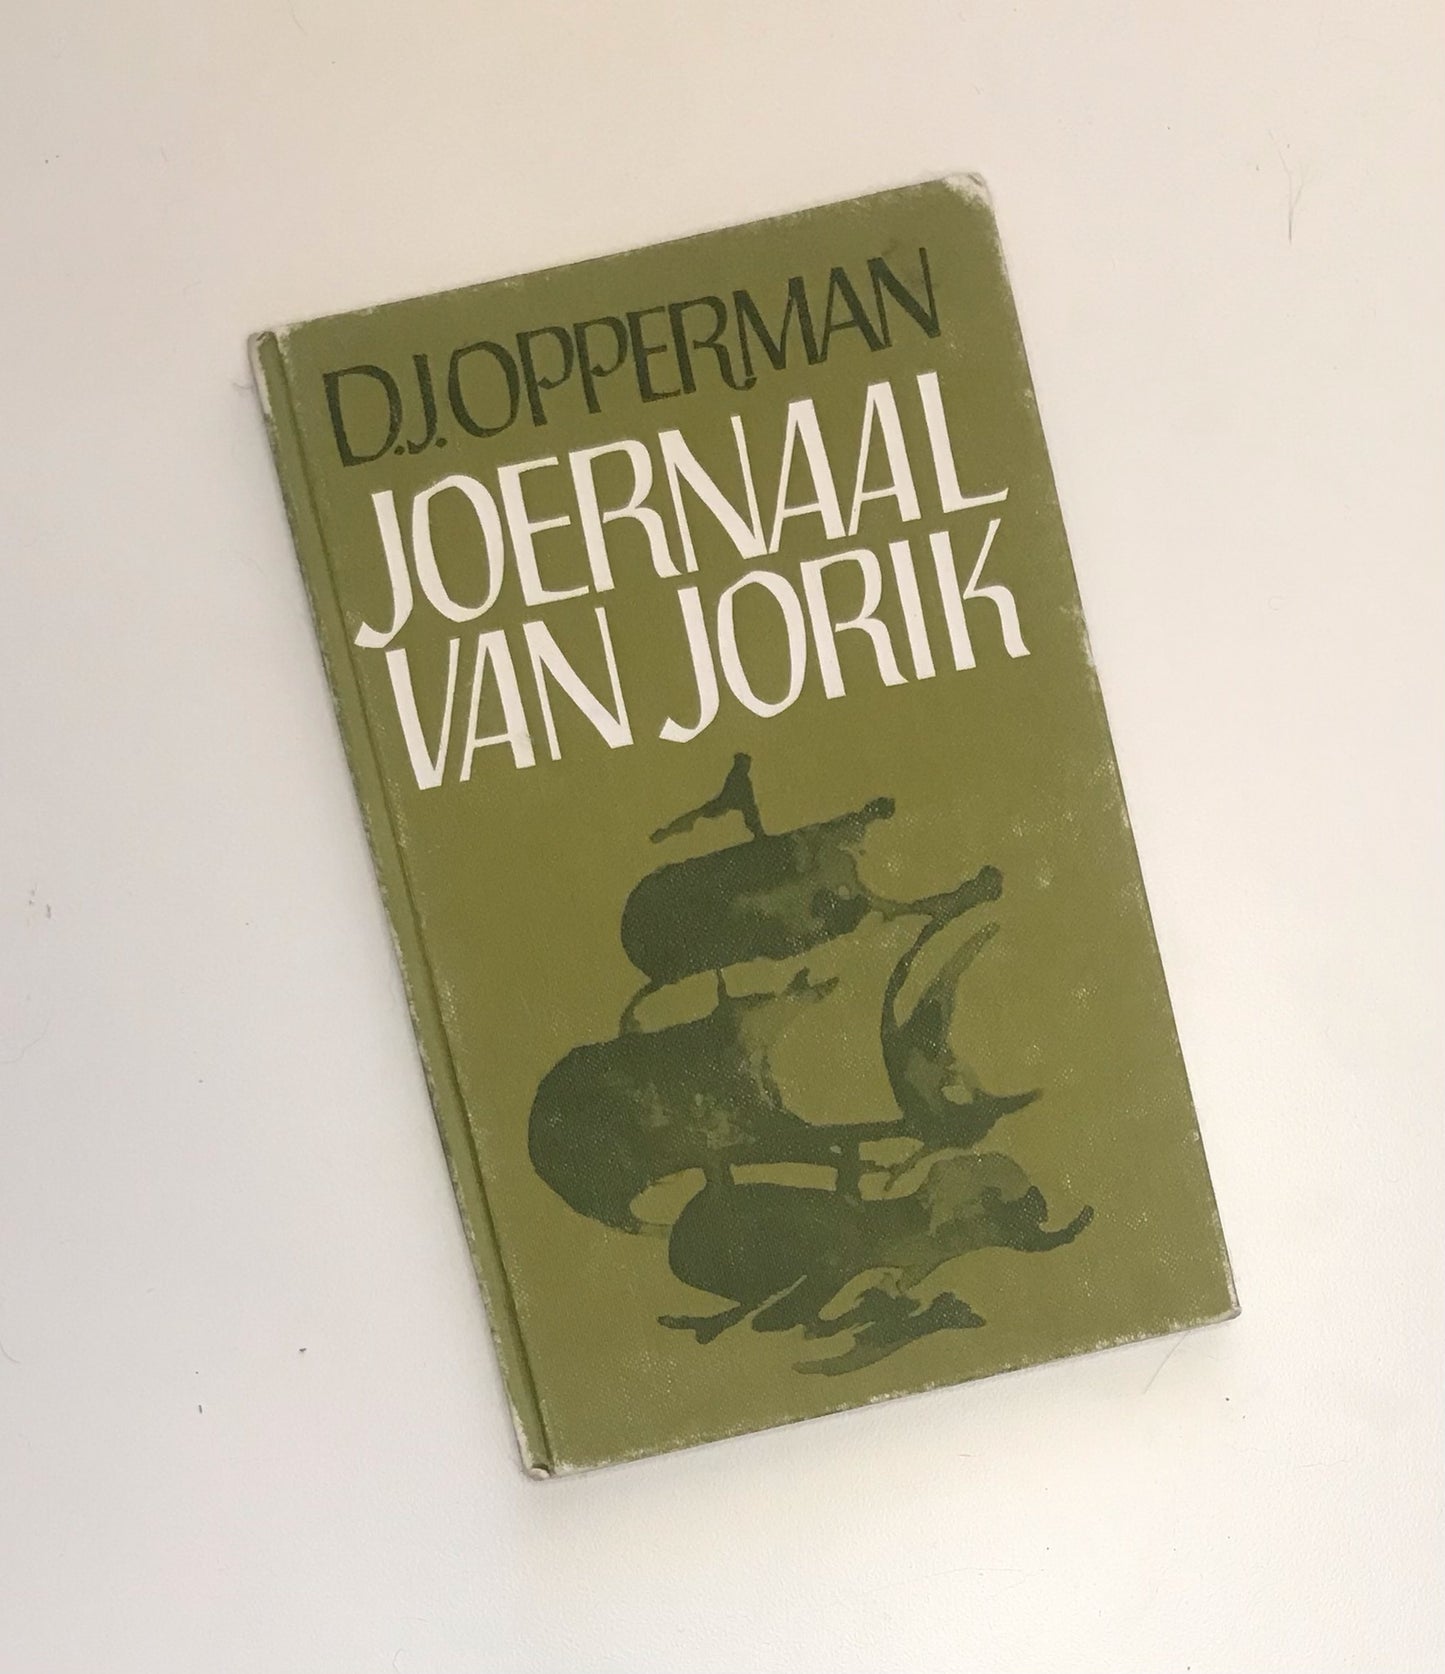 Joernaal van Jorik - D.J. Opperman